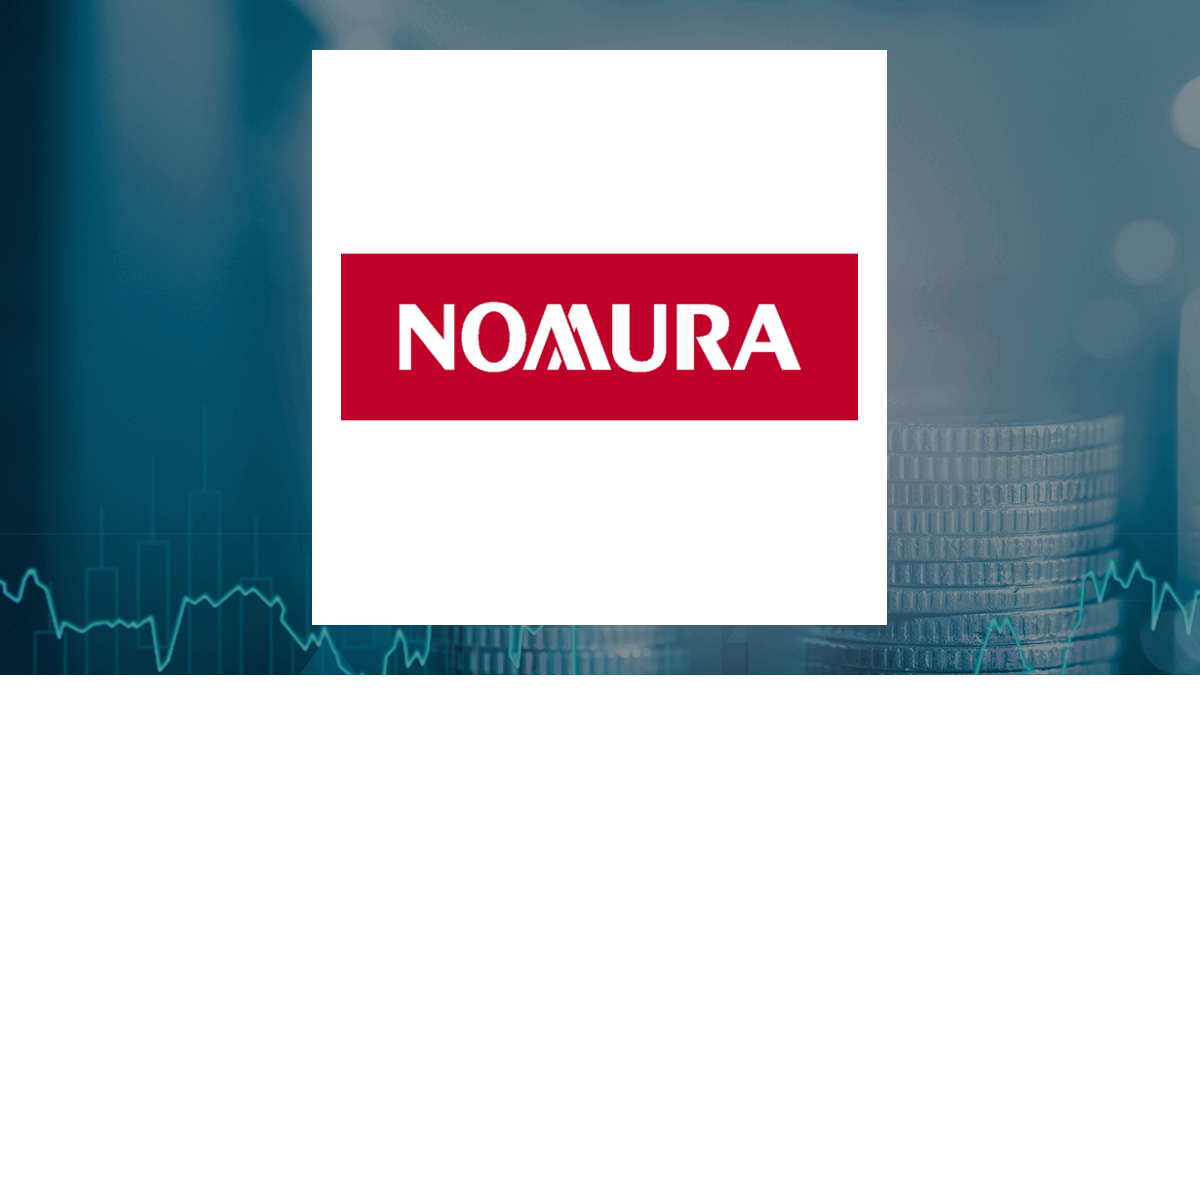 Nomura logo with Finance background